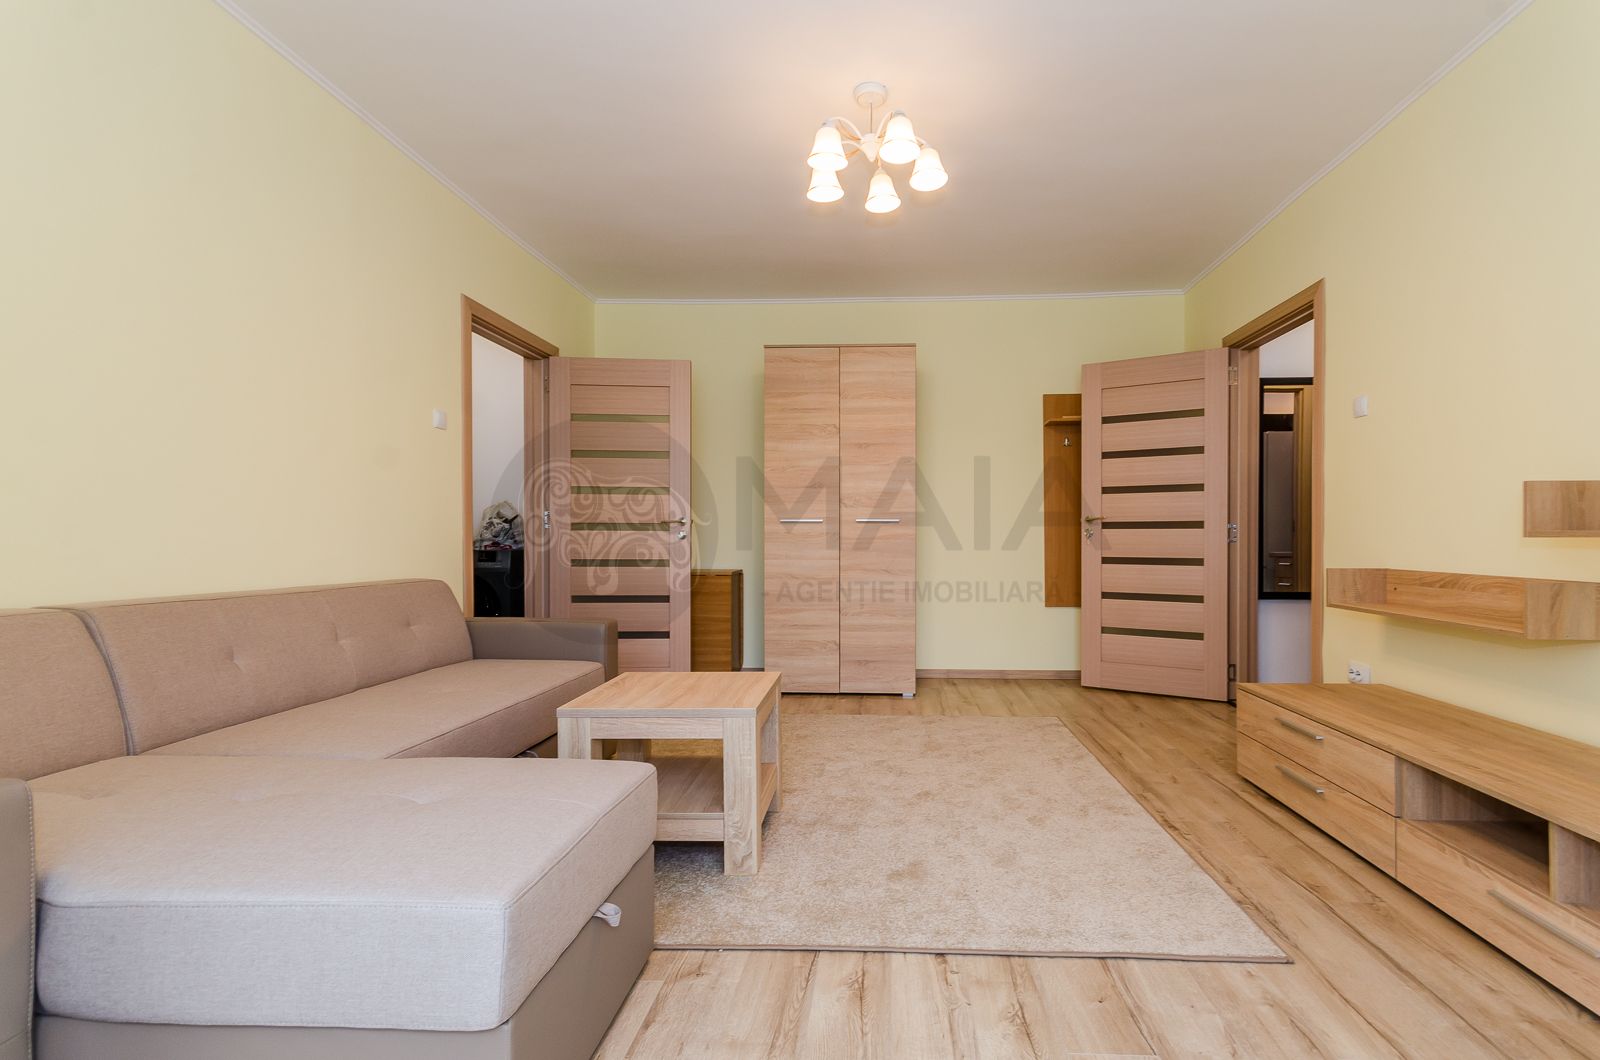 Apartament 2 camere, etaj 1 , renovat complet, zona Mihai Viteazu